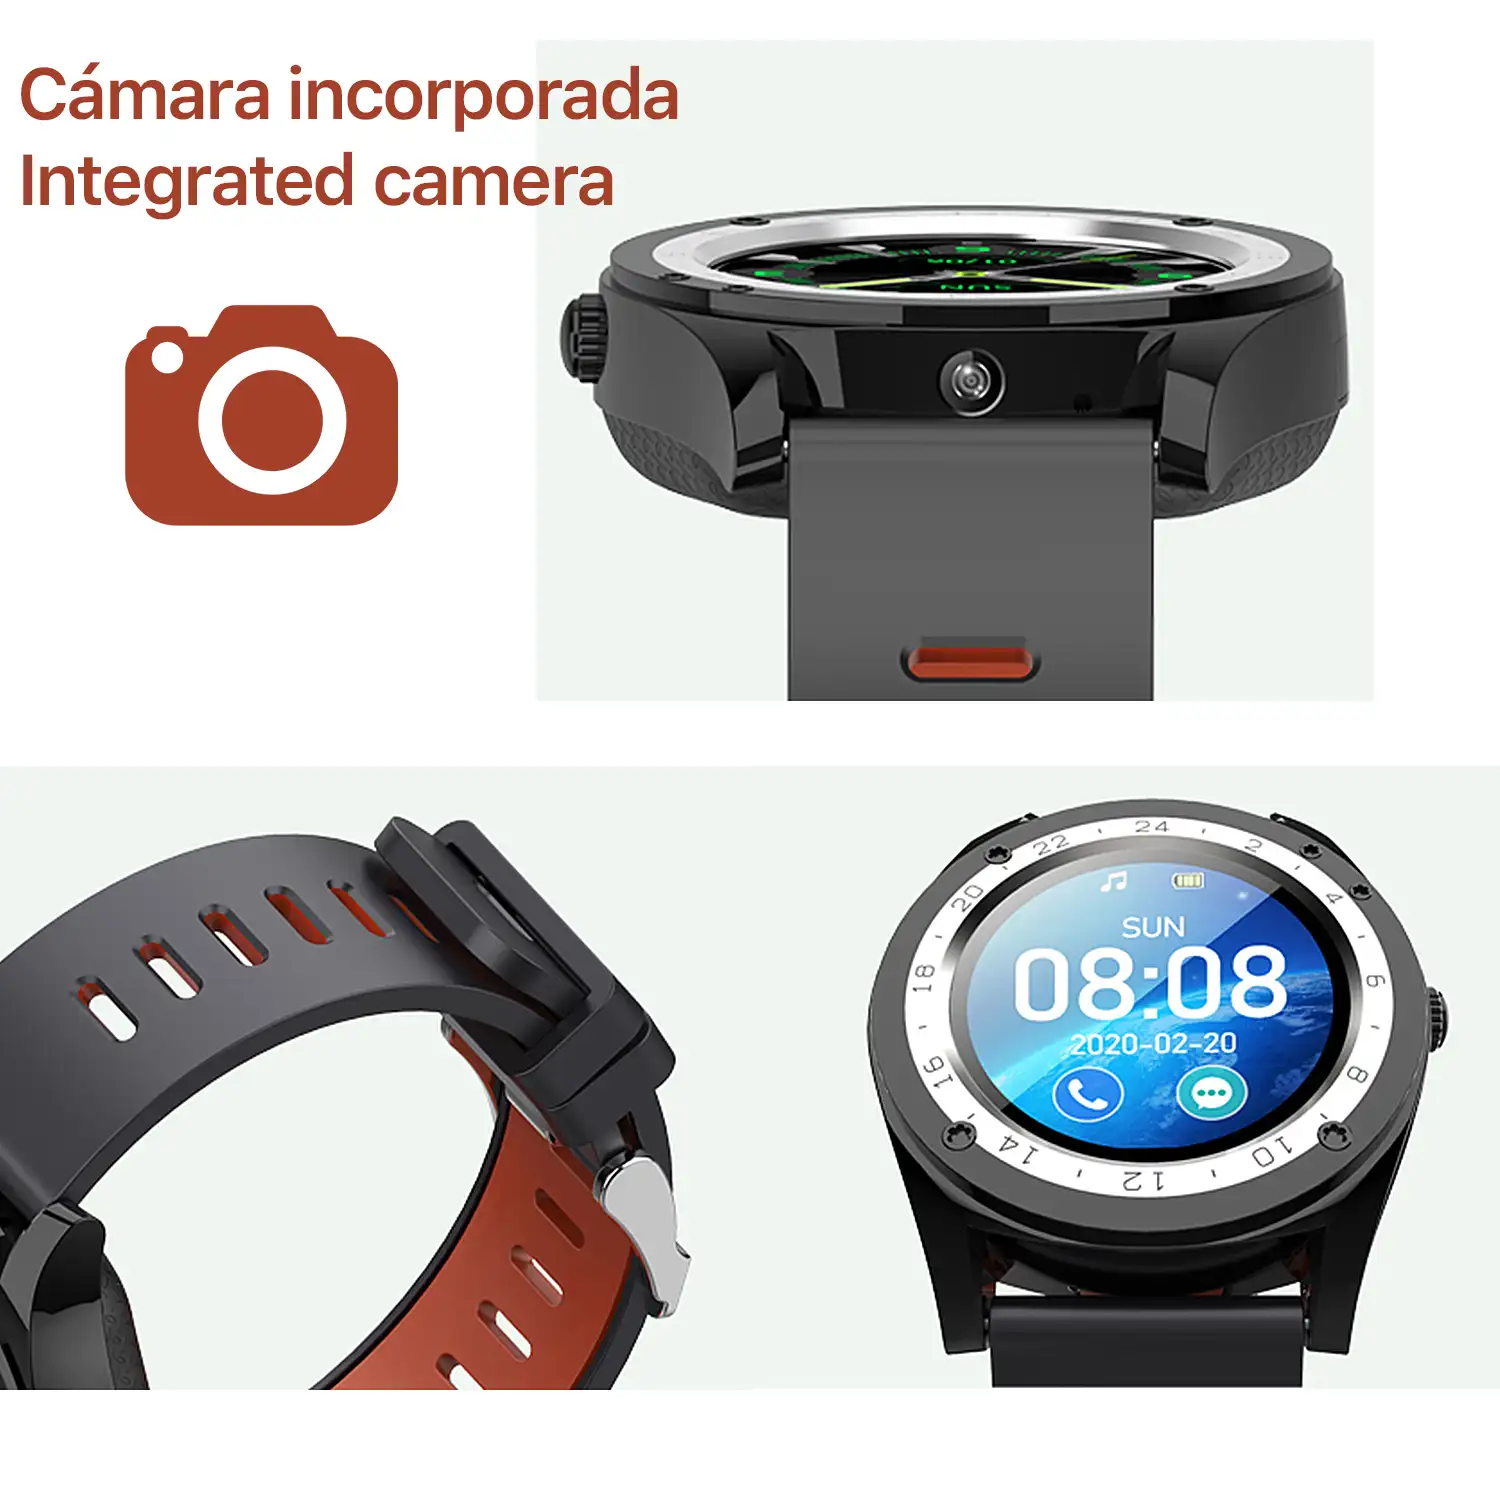 Smartwatch M10 multifunción con podómetro, aviso de llamadas, notificaciones. App para Android. Opción de SIM y micro SD.